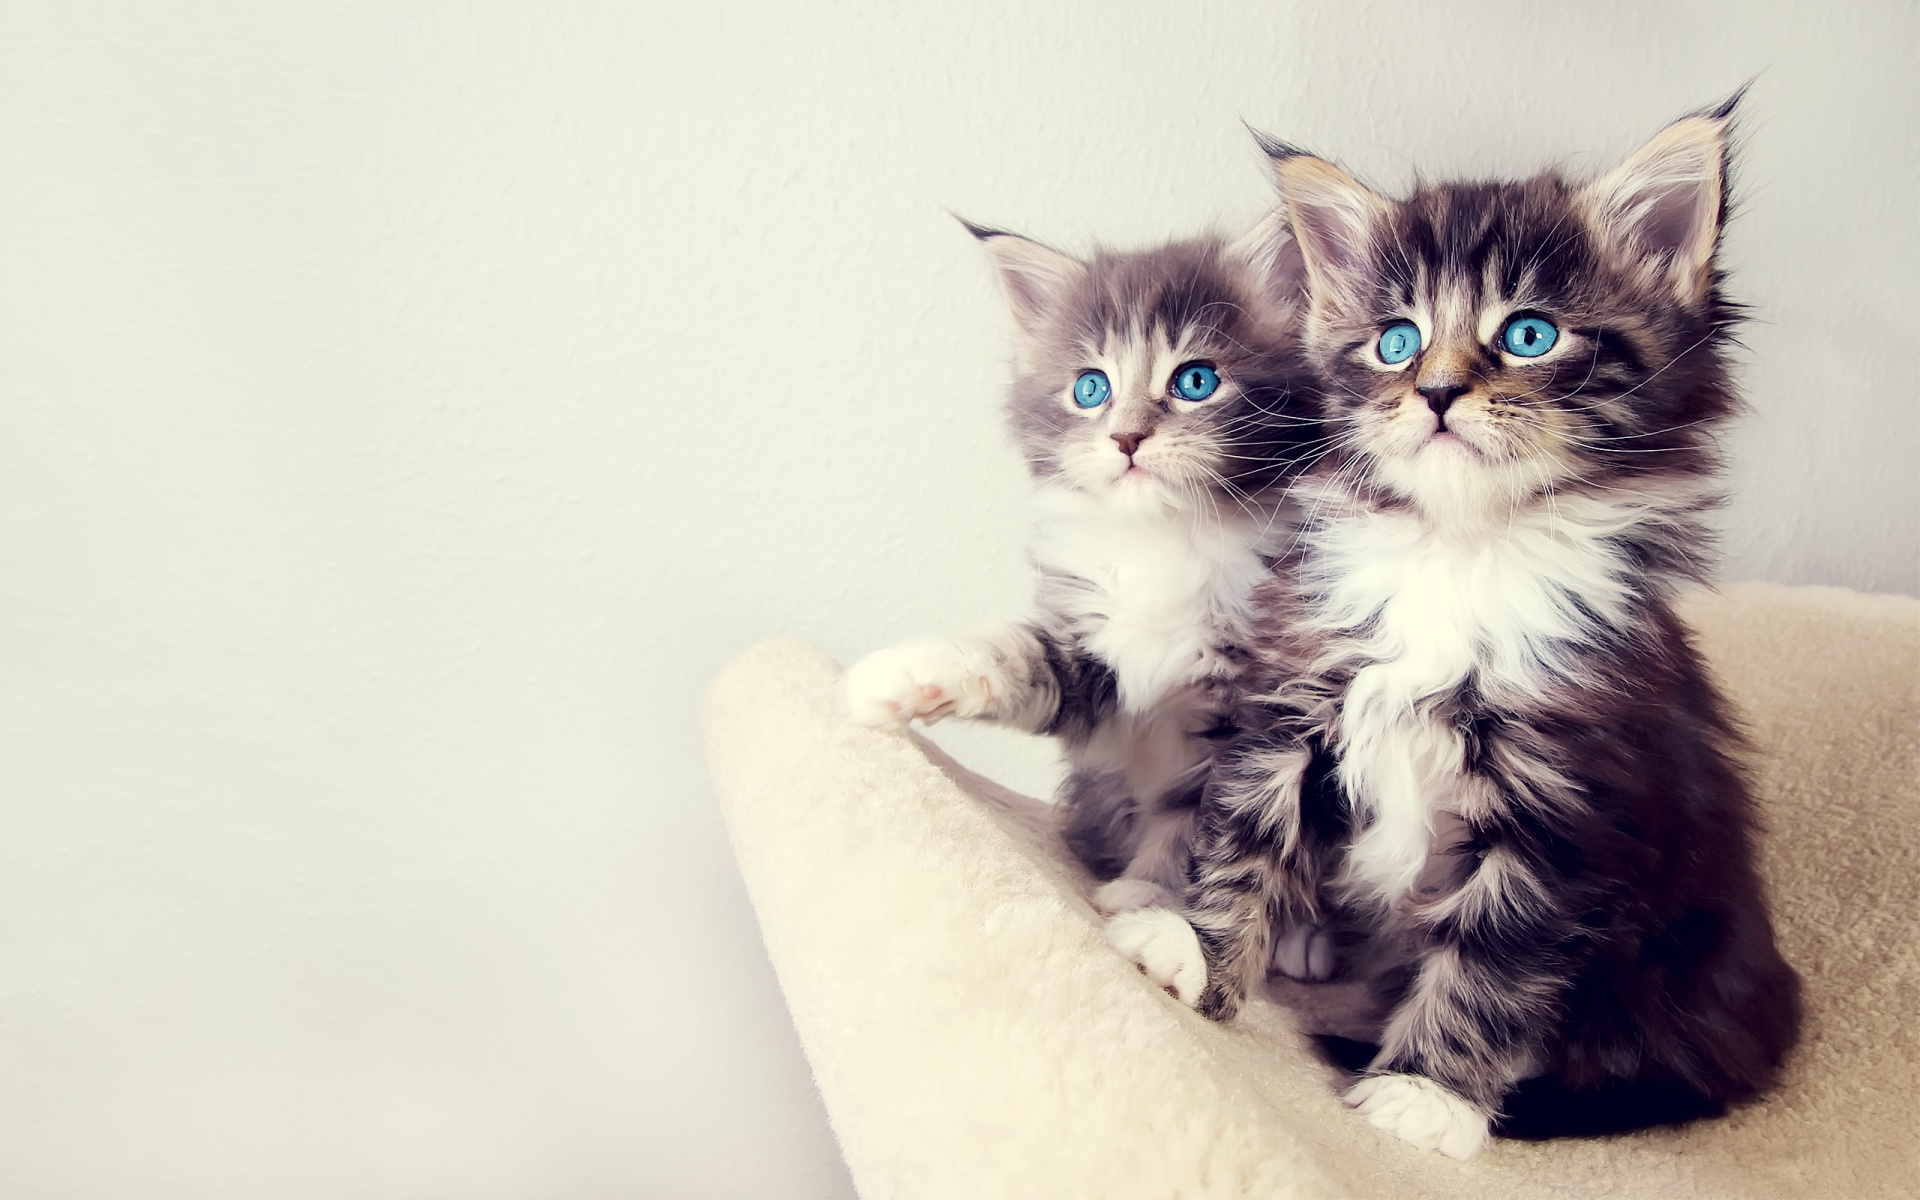 picture-two-cute-funny-kitten-cat-wallpaper-hd-dekstop.jpg